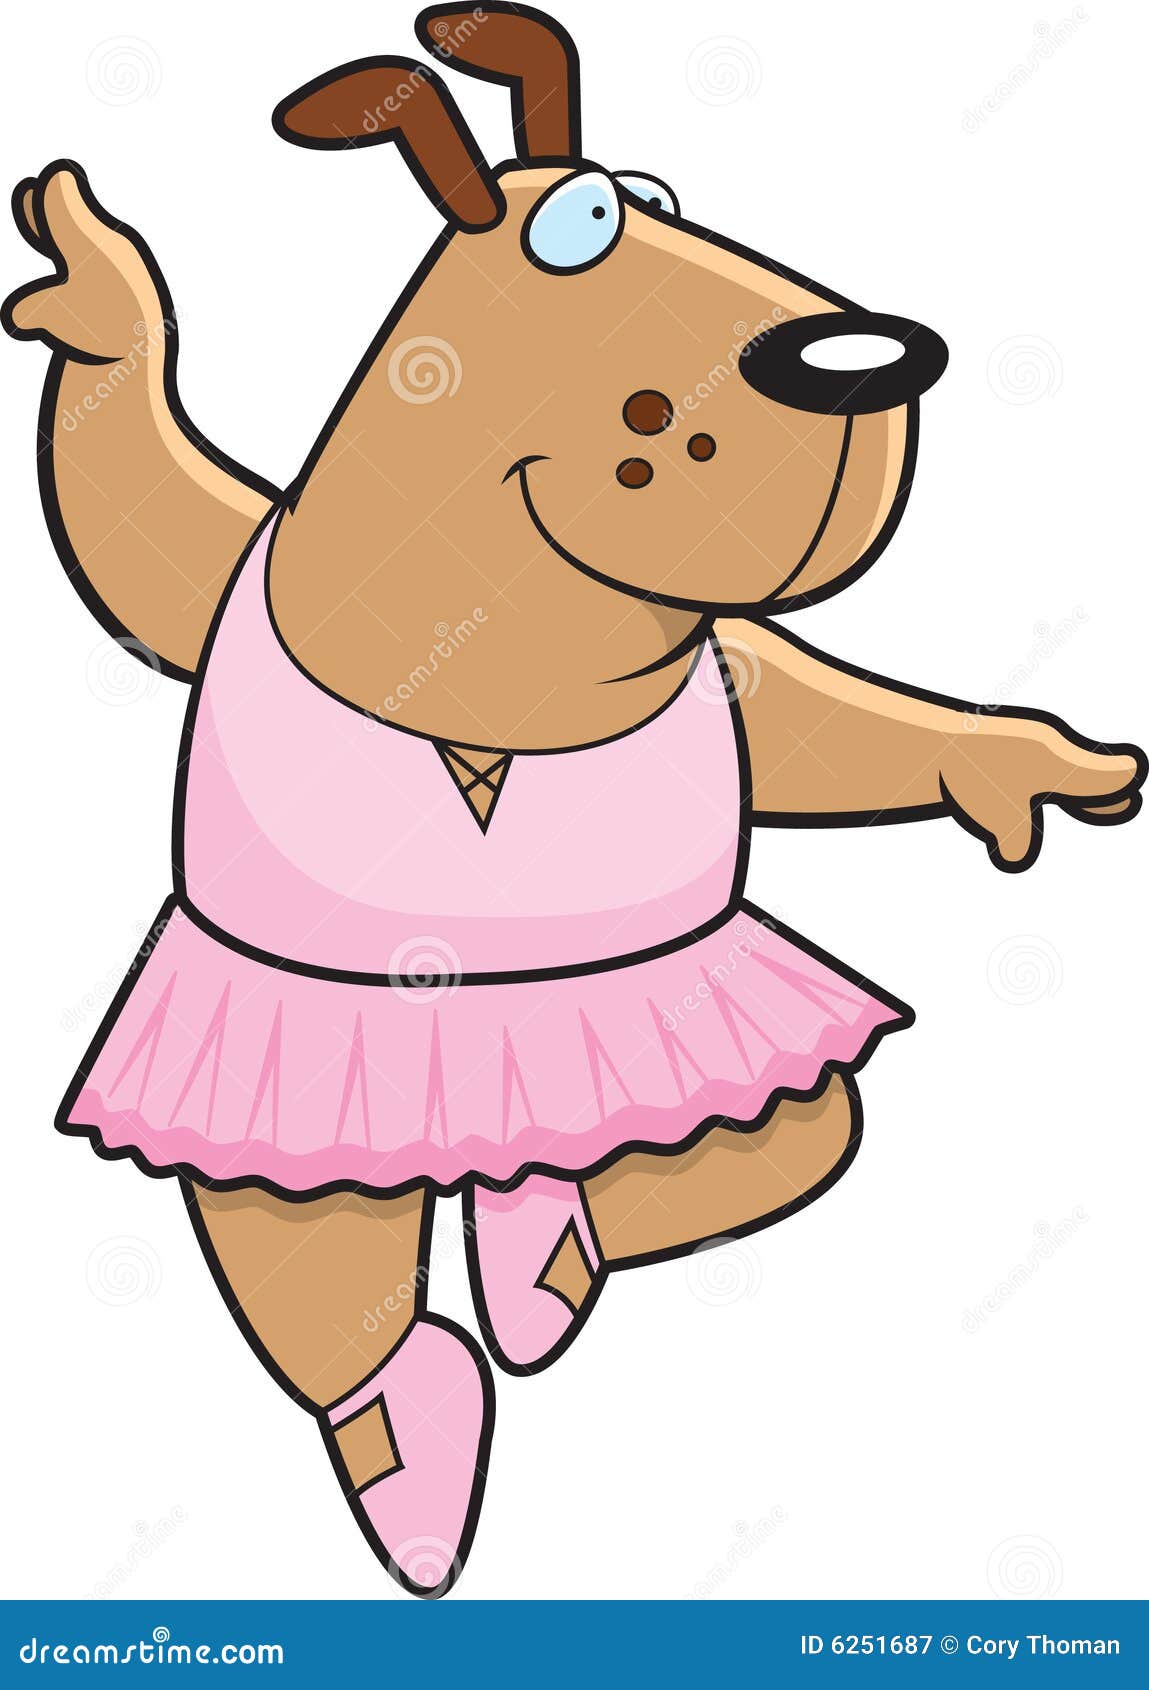 Dog Ballerina stock vector. Illustration of cartoon, smiling - 6251687